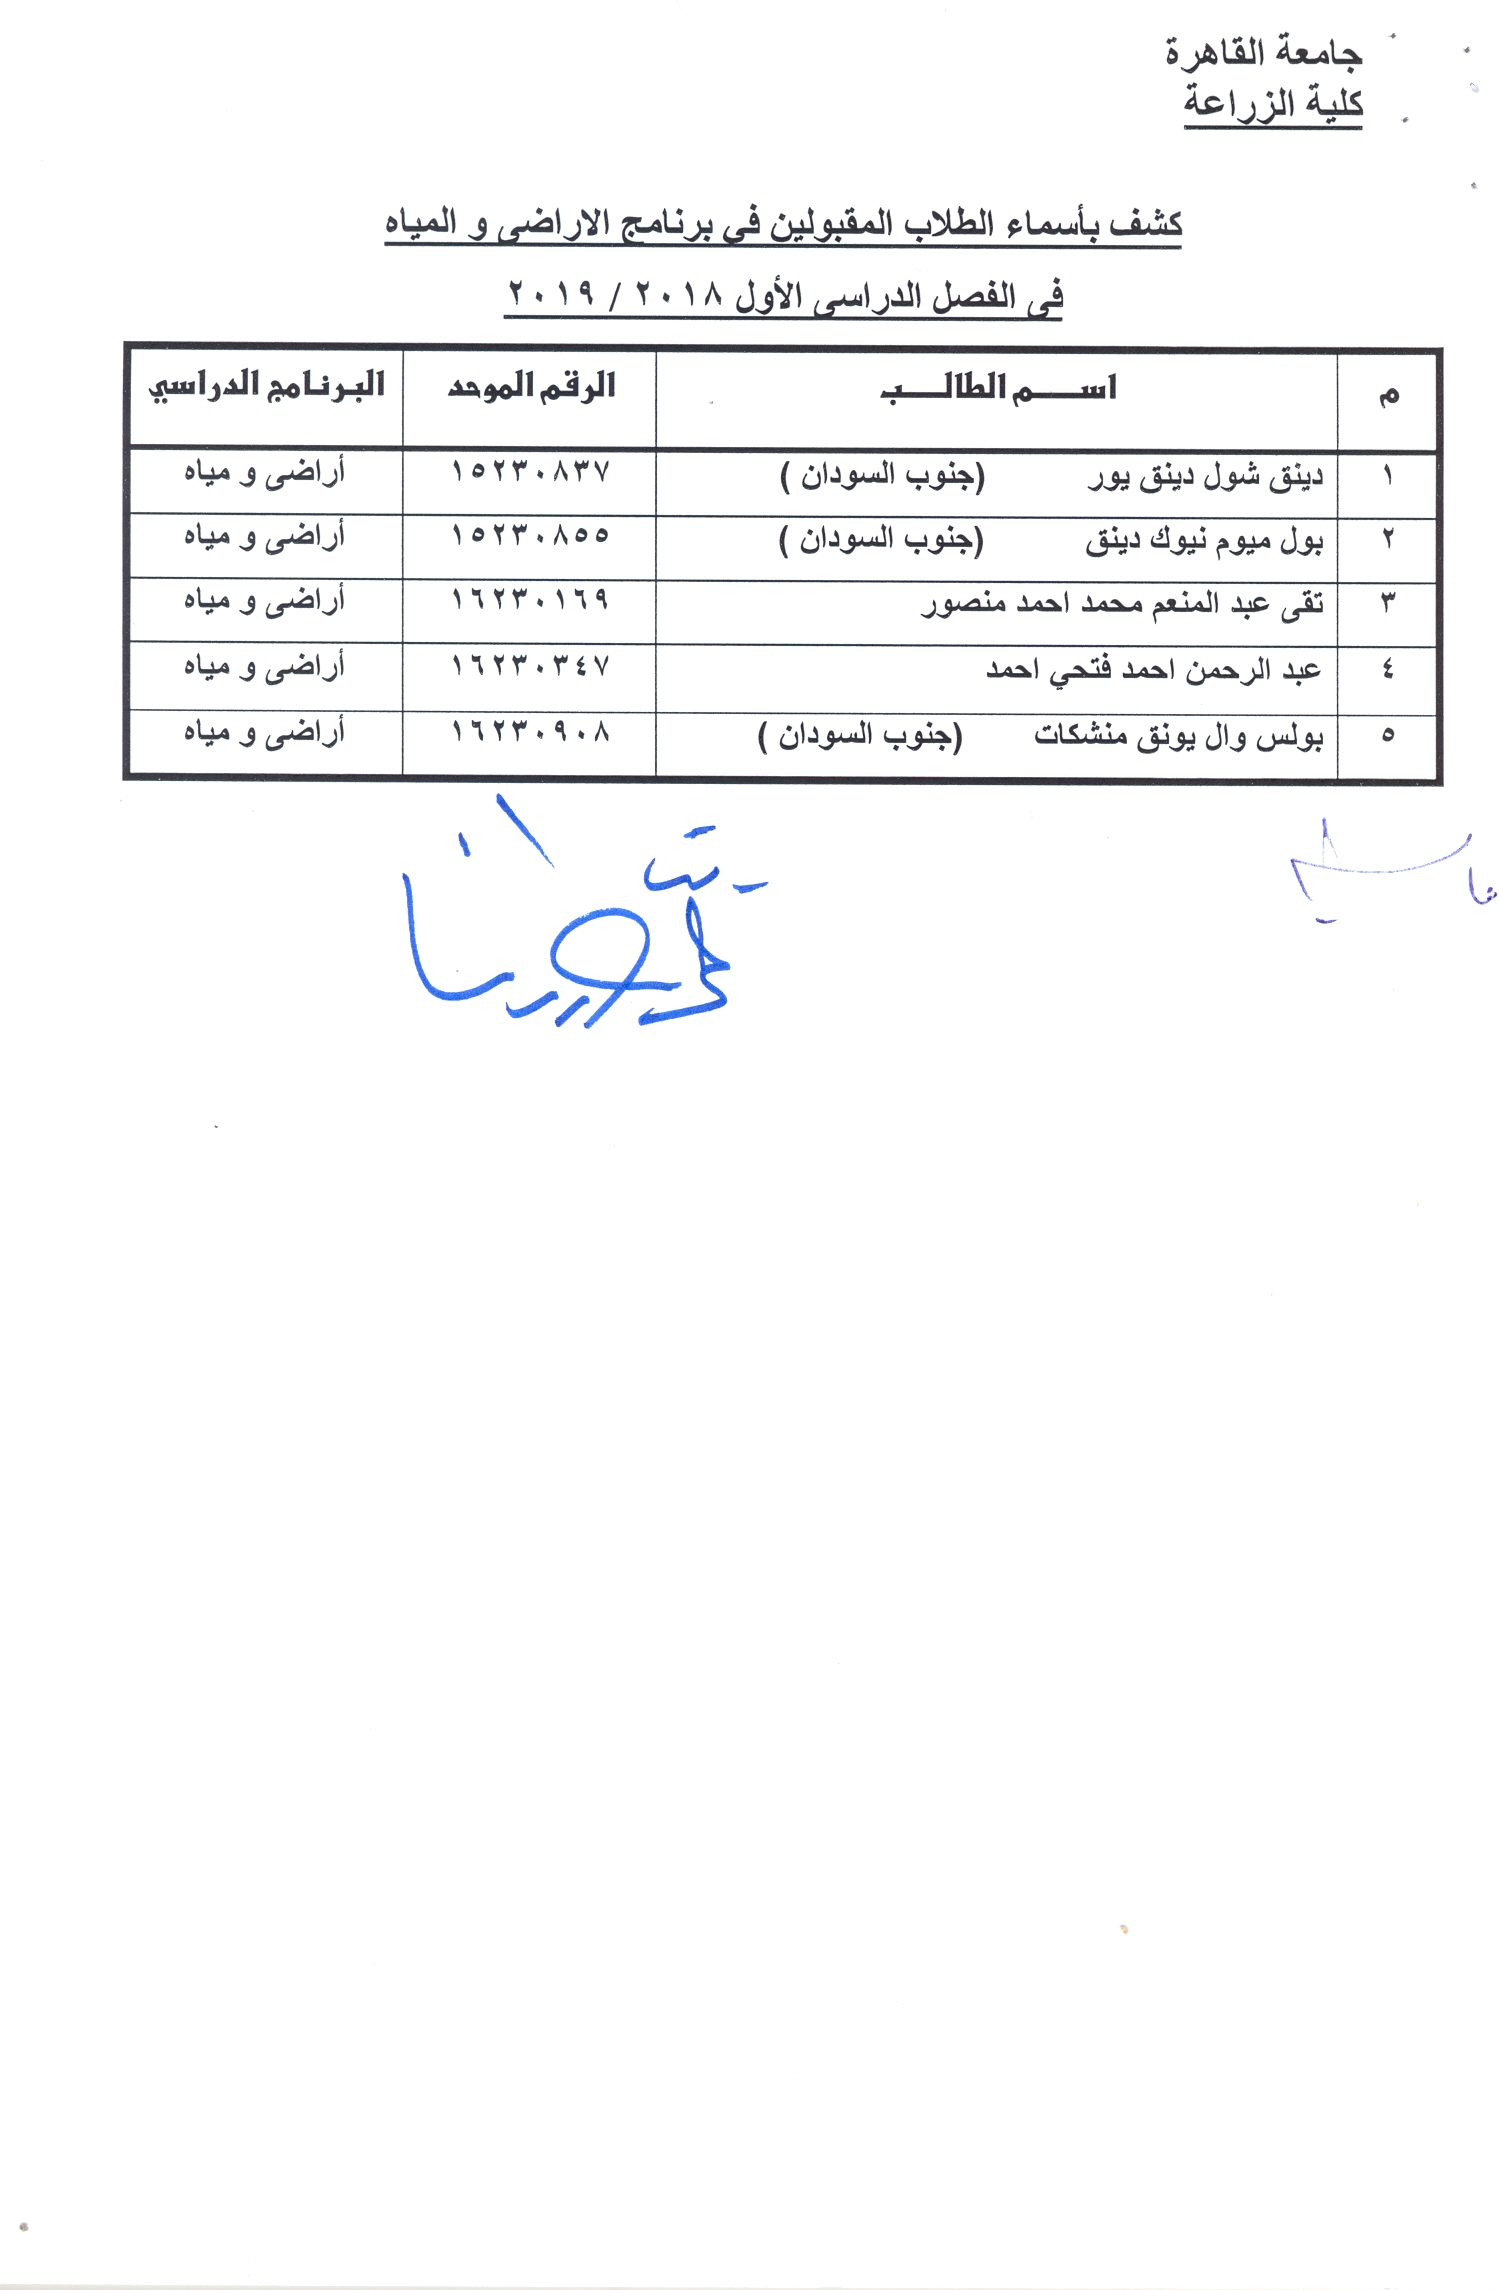 نتيجة التنسيق الداخلى لطلاب " برامج اللغة العربية"